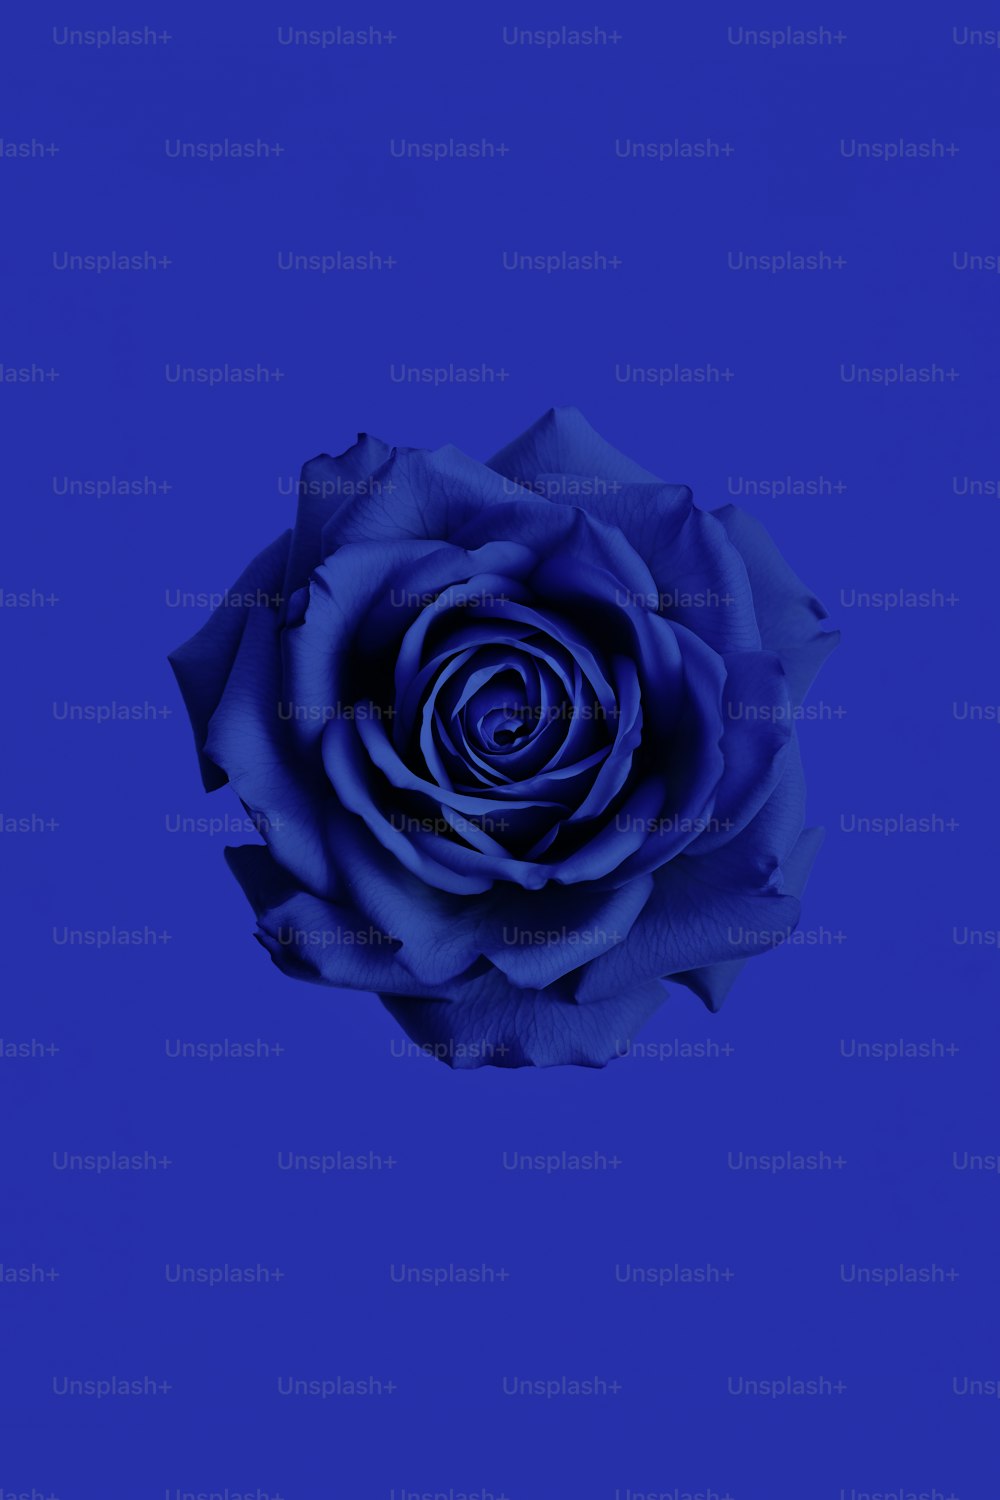 Une rose bleue est représentée sur un fond bleu